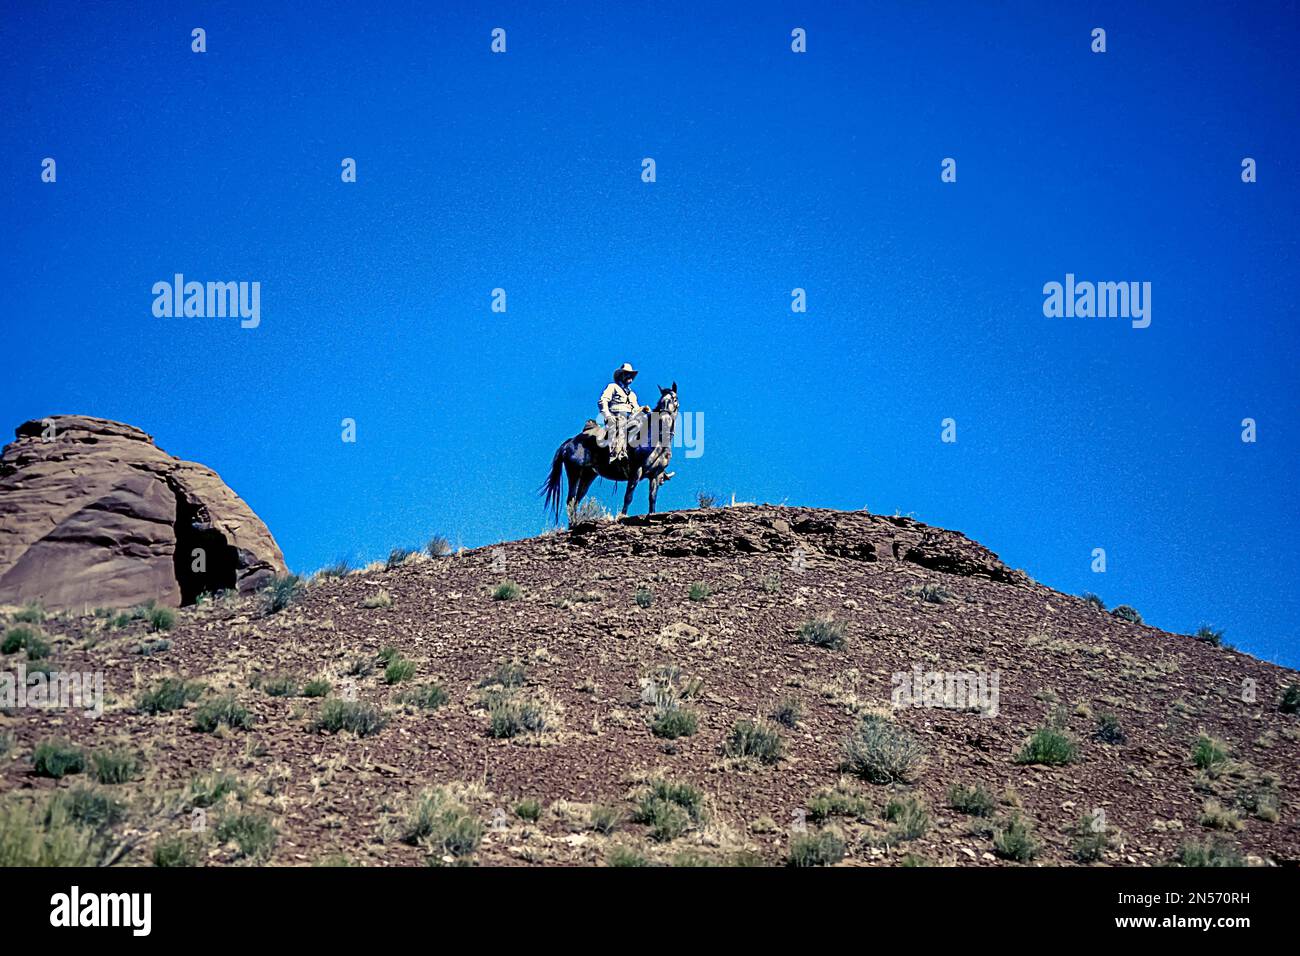 Cowboy su cavallo pied, collina sulla prateria, cielo blu, Arizona, USA Foto Stock